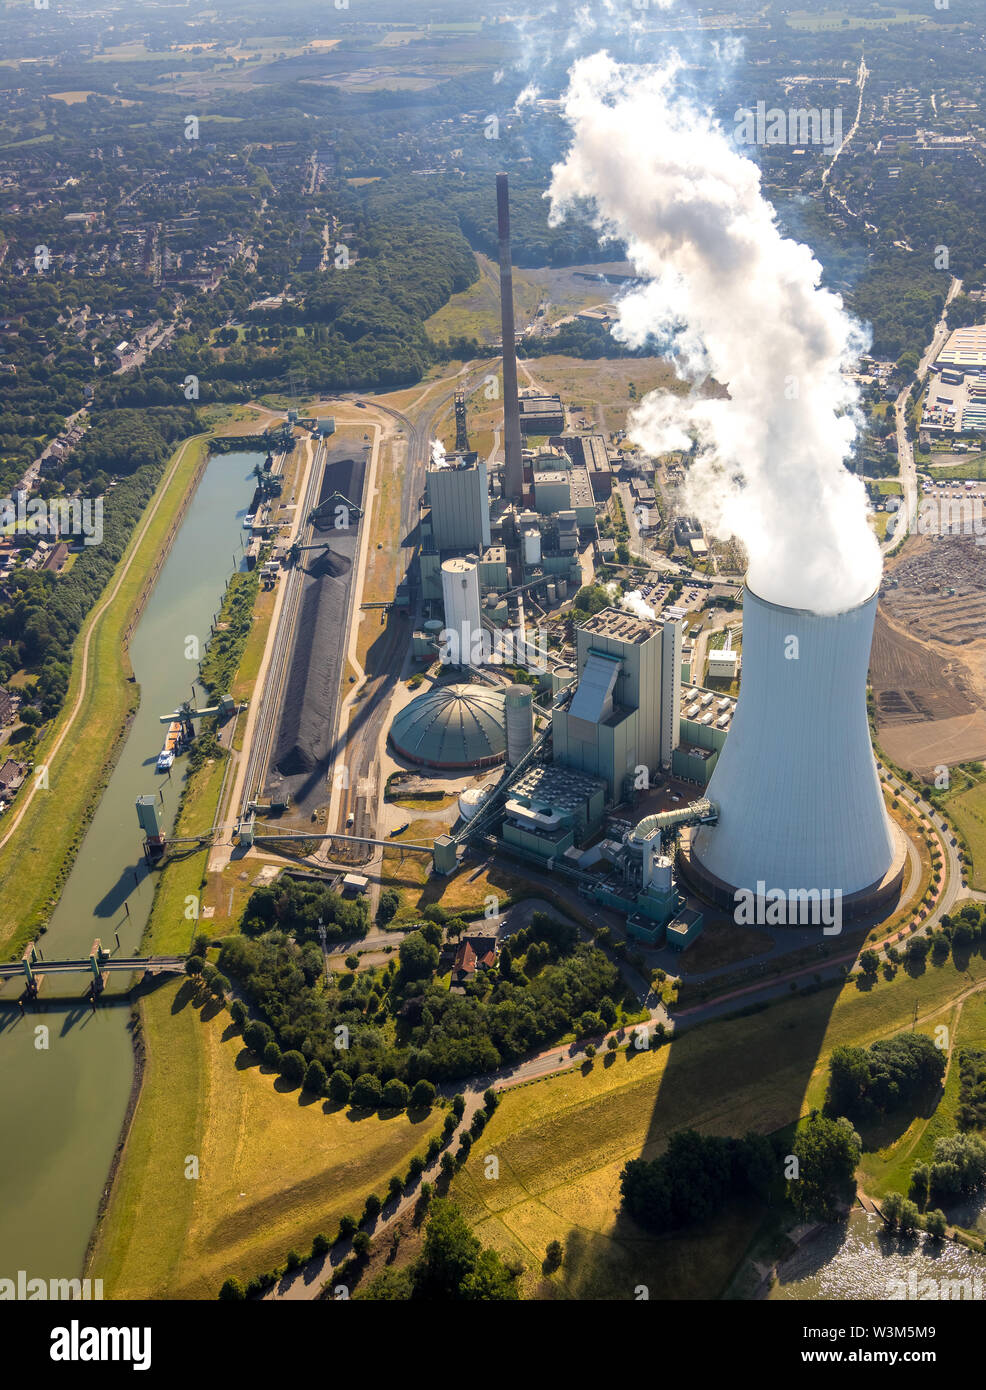 Vista aerea della posizione logistica logport VI in Duisburg-Walsum sul Reno sul maggese di un ex mulino di carta vicino al disco centrali a carbone vegetale, carbone pow Foto Stock